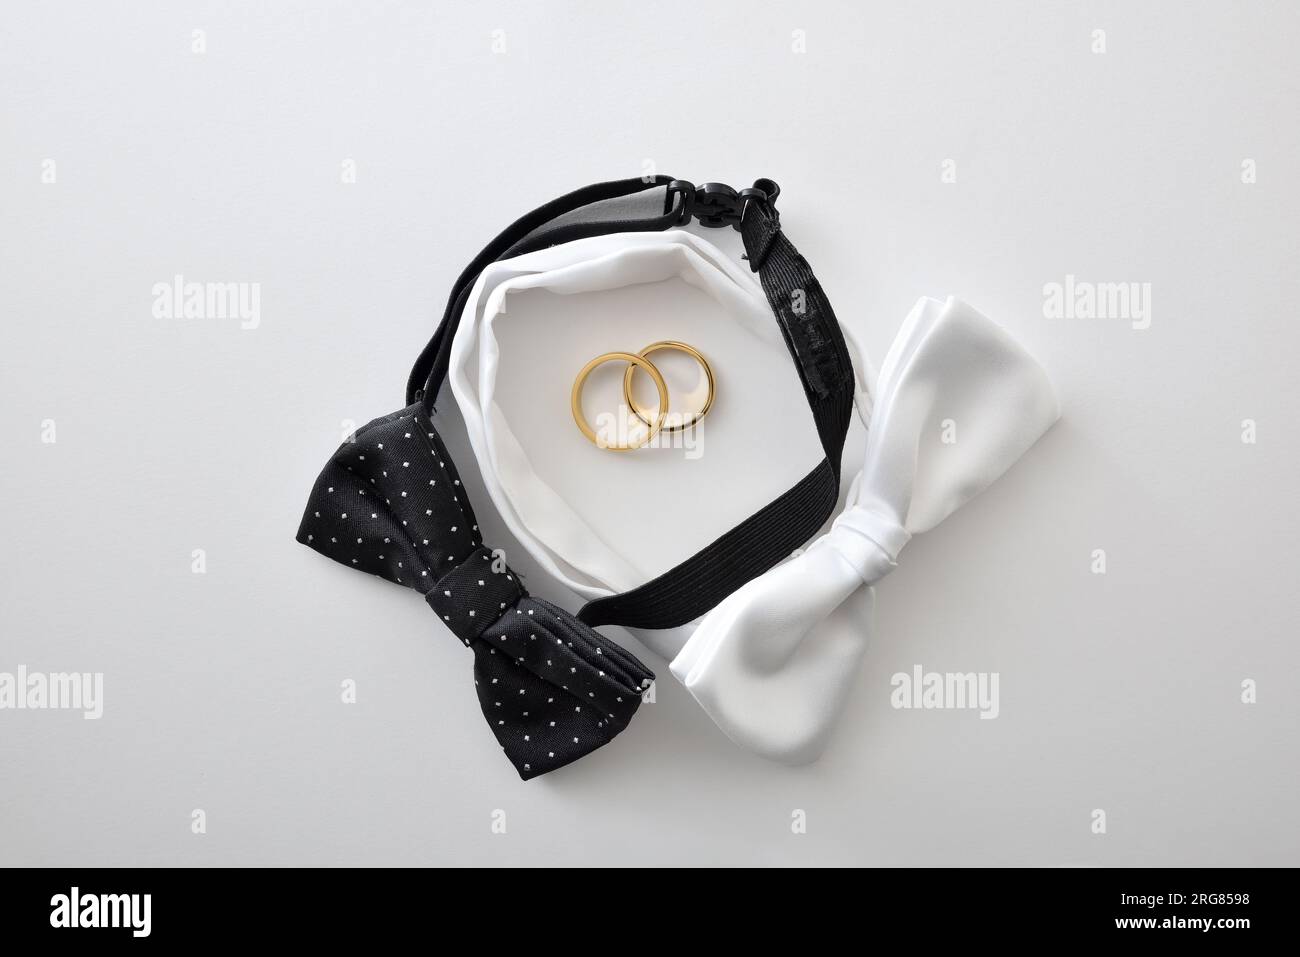 Fond de mariage gay conceptuel avec noeud papillon noir et blanc formant un cercle et des anneaux de mariage au centre. Vue de dessus. Banque D'Images